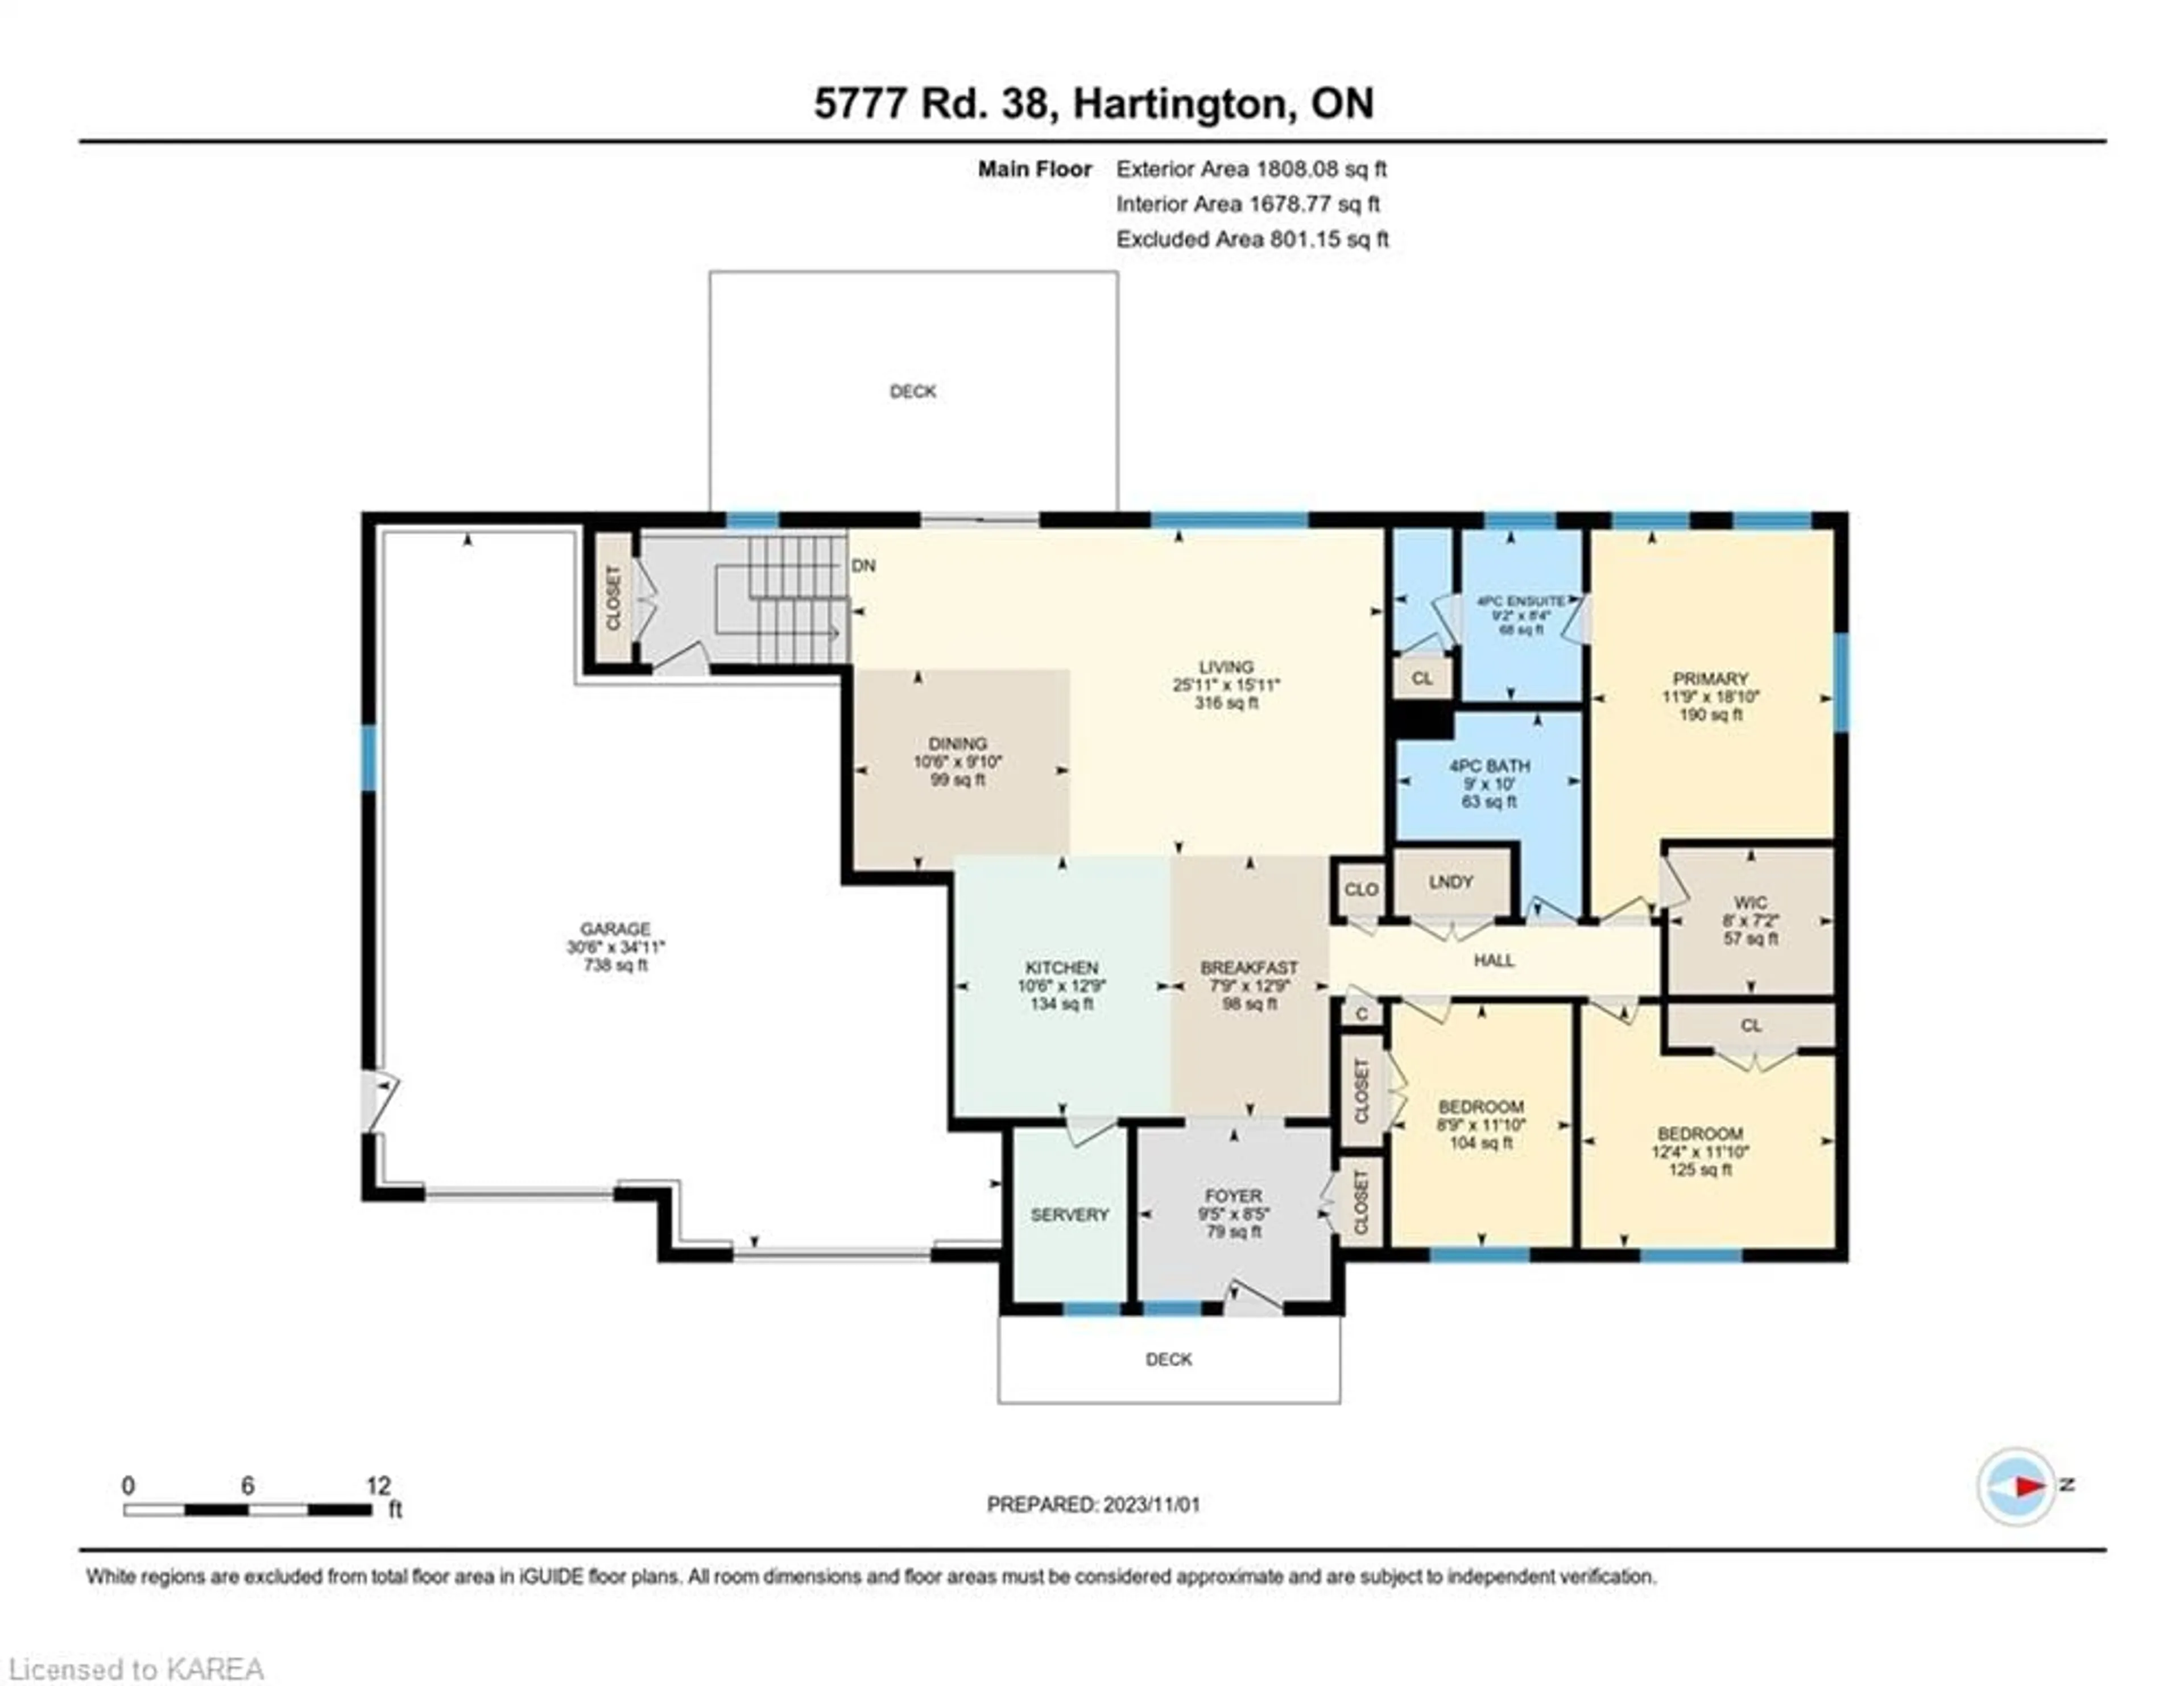 Floor plan for 5777 Highway 38, Hartington Ontario K0H 1W0